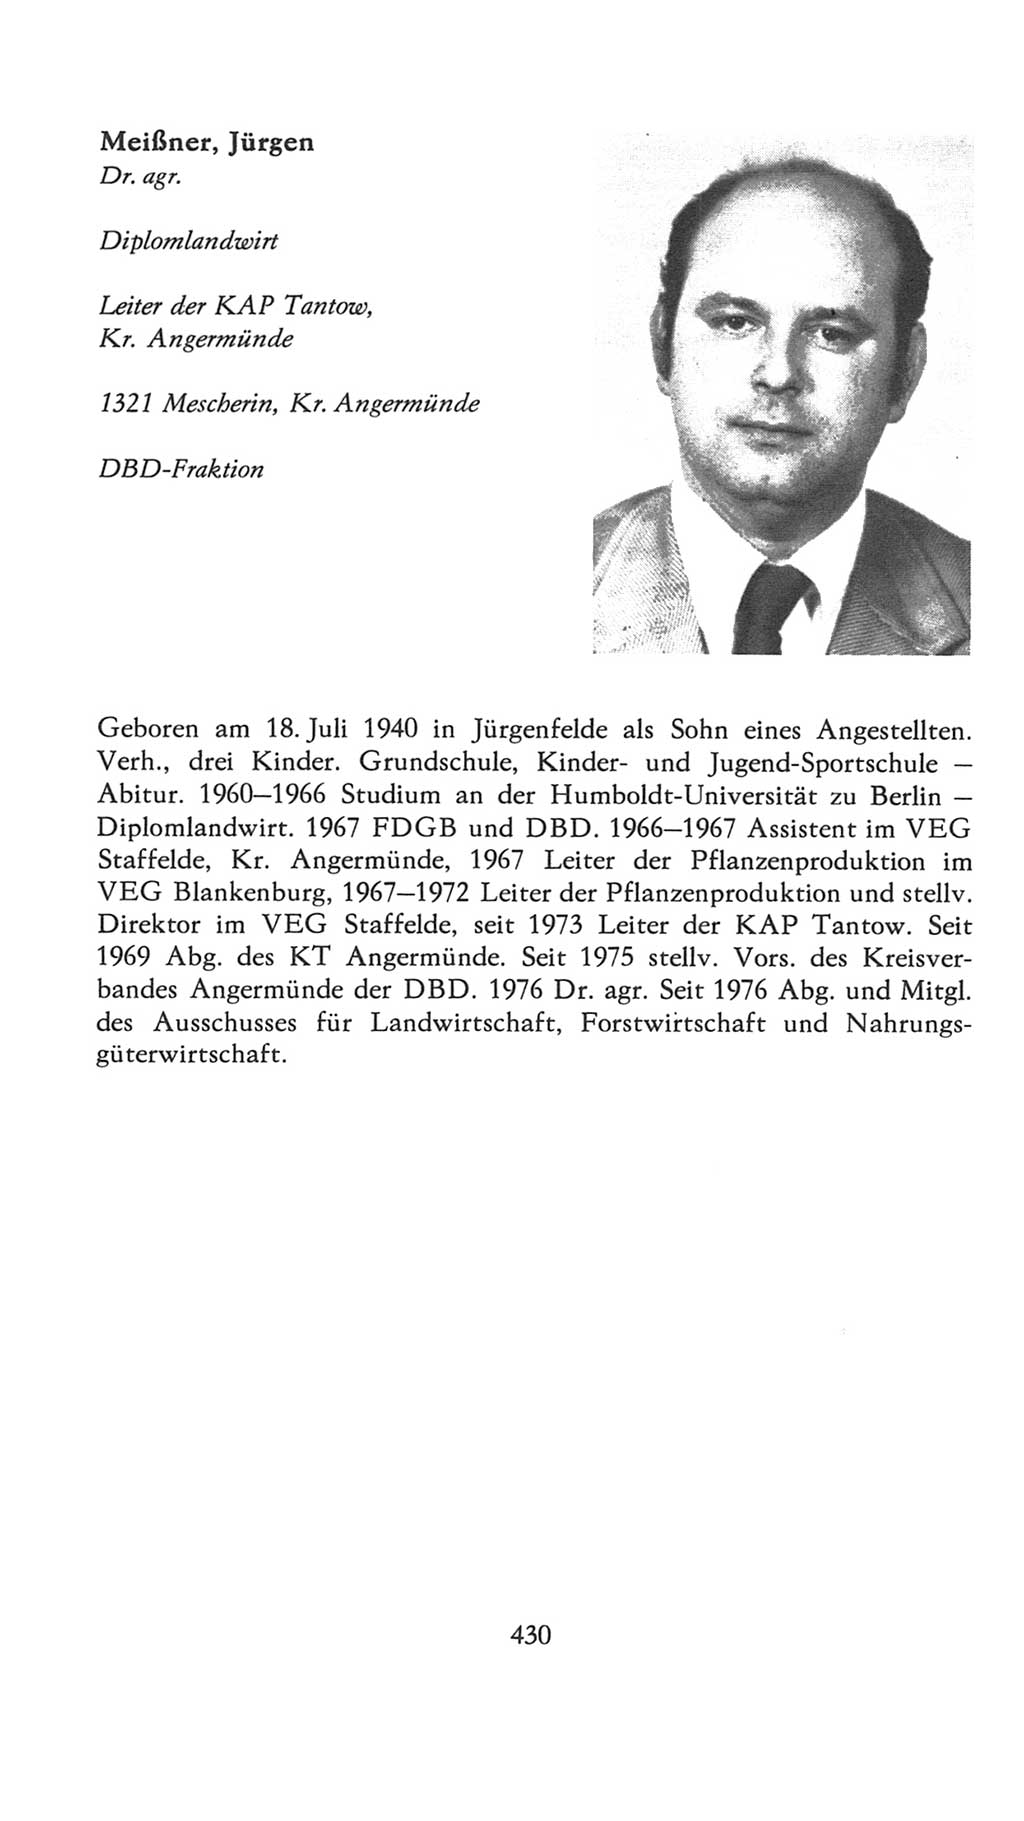 Volkskammer (VK) der Deutschen Demokratischen Republik (DDR), 7. Wahlperiode 1976-1981, Seite 430 (VK. DDR 7. WP. 1976-1981, S. 430)